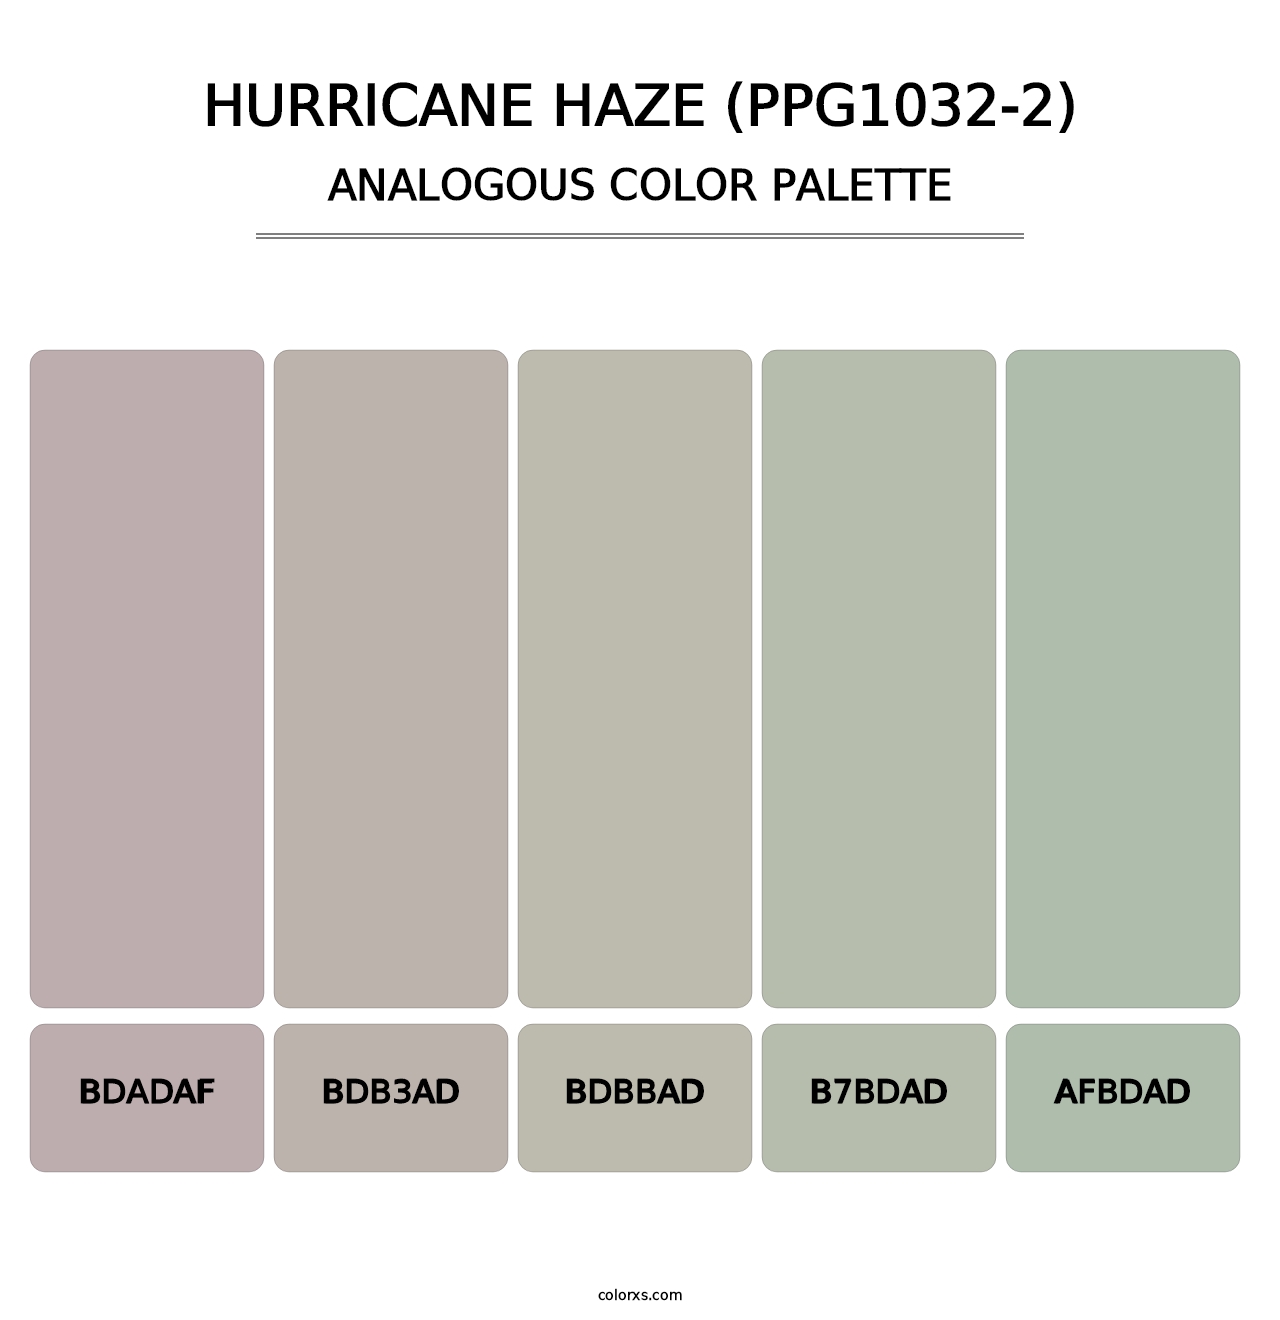 Hurricane Haze (PPG1032-2) - Analogous Color Palette